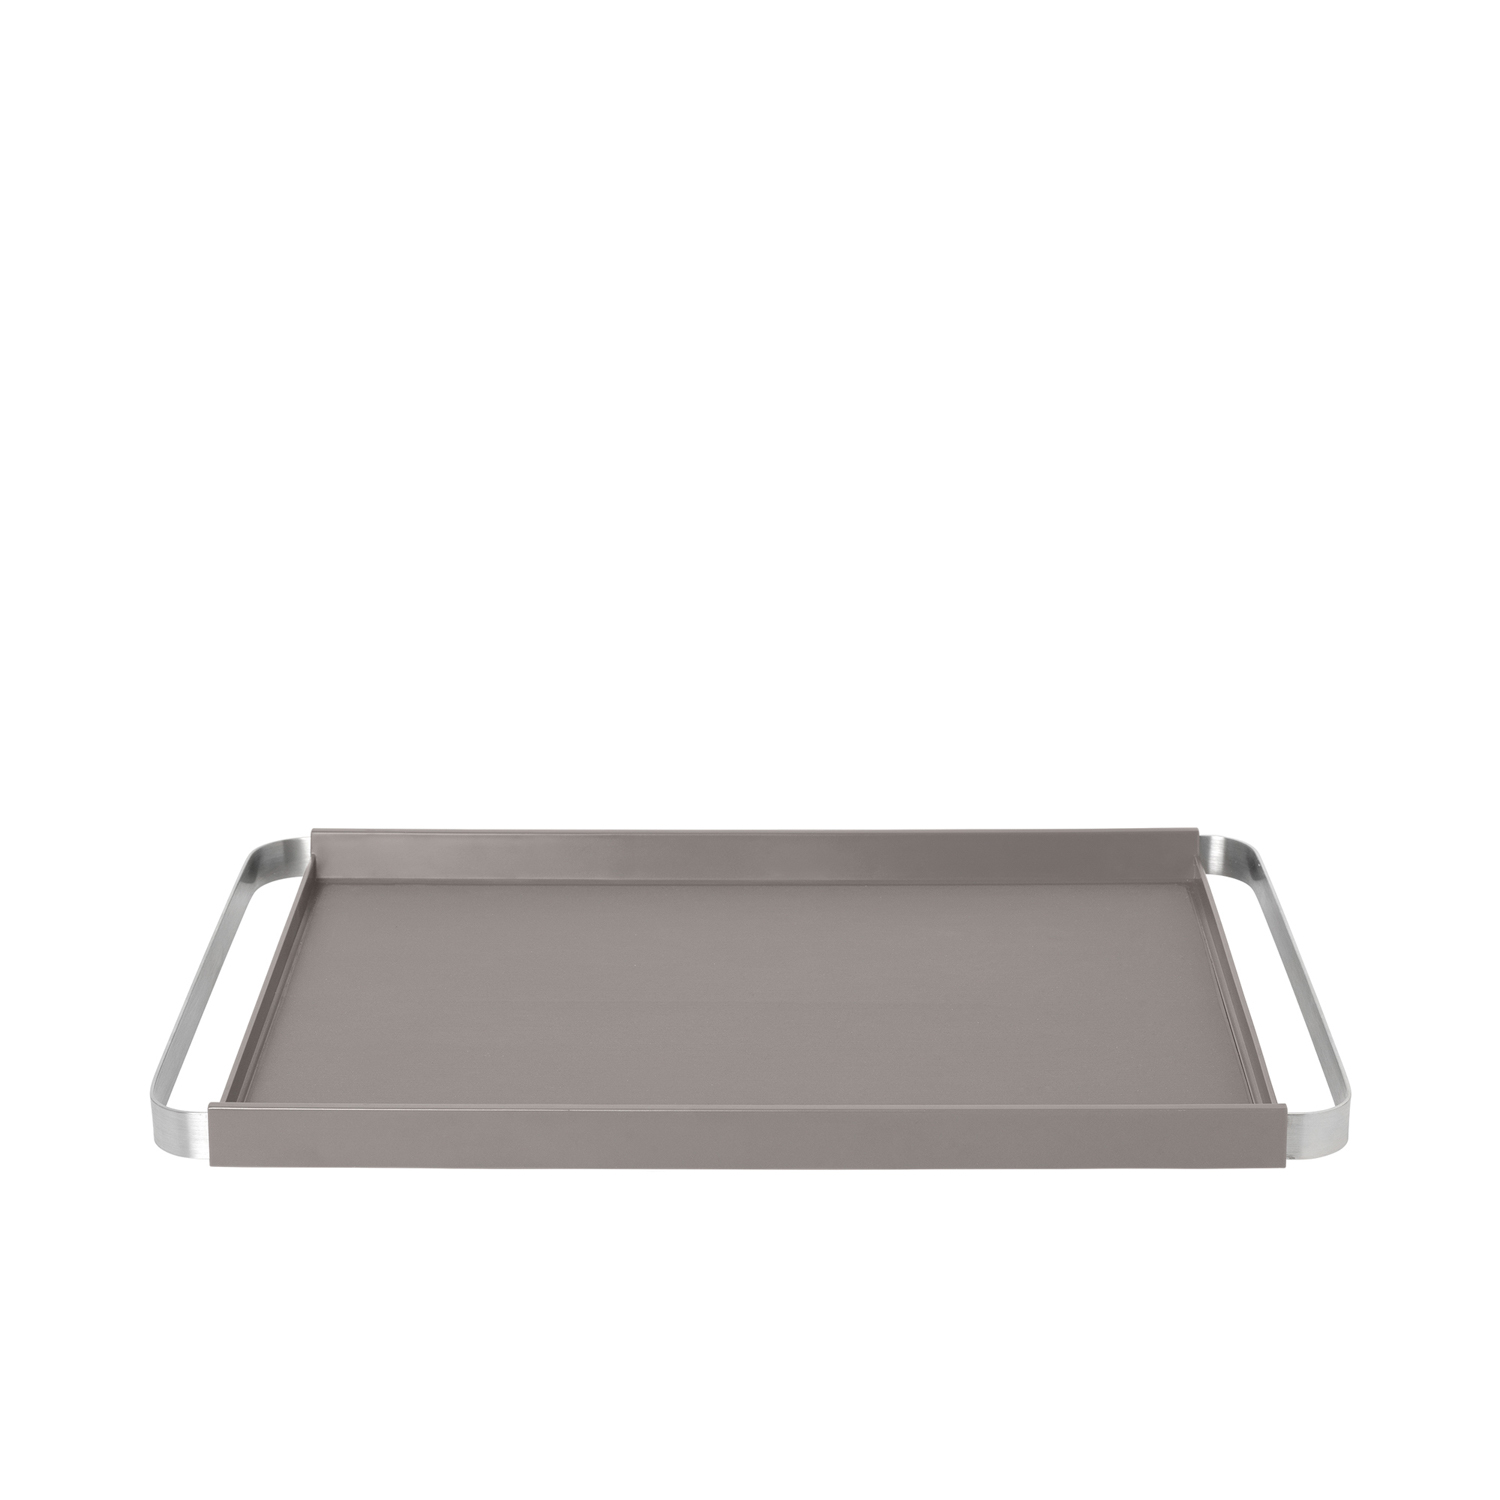 Blomus Tablett PEGOS, rechteckig, mit rutschhemmender Silikonauflage, Maße: 50x32x3,7 cm, Farbe: satellite